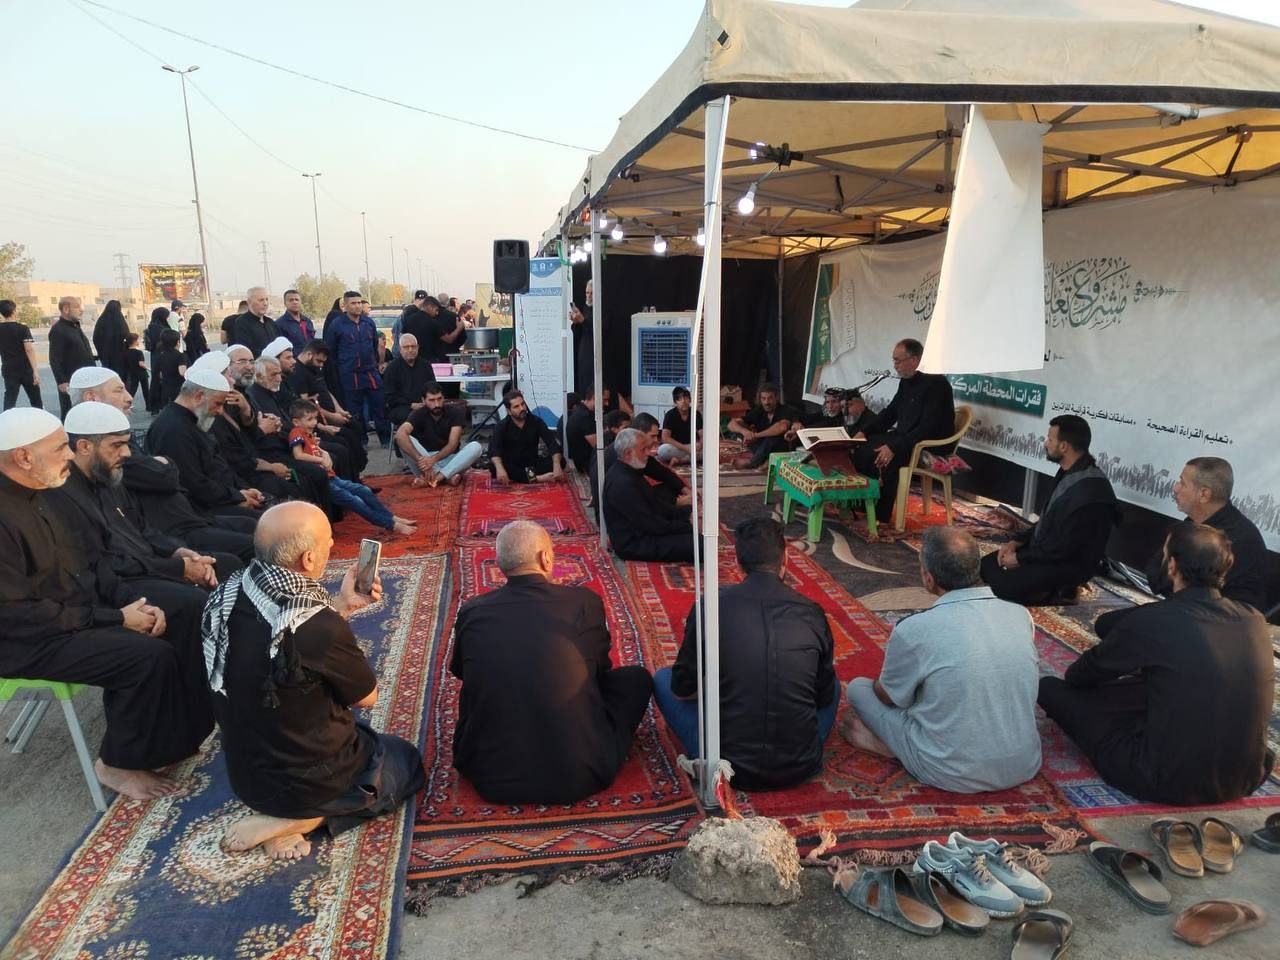 المَجمَع العلميّ يقيم محفلاً قرآنياً في قضاء الحسينية ببغداد